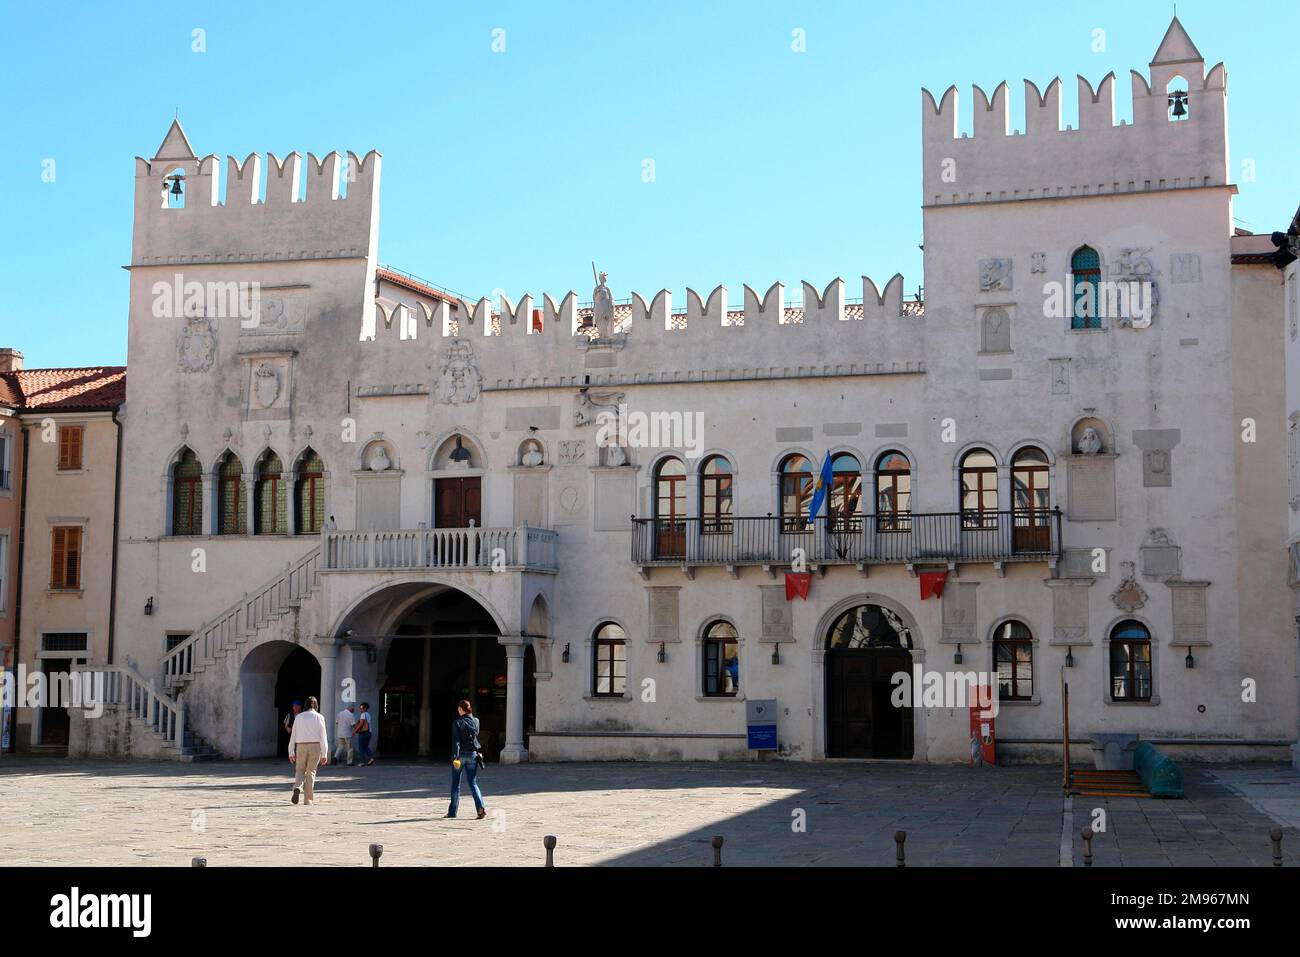 Il Municipio in Piazza Tito a Capodistria, sulla costa adriatica della Slovenia. L'edificio risale al 15th ° secolo, un palazzo pretoriano in stile gotico ventiano. Foto Stock